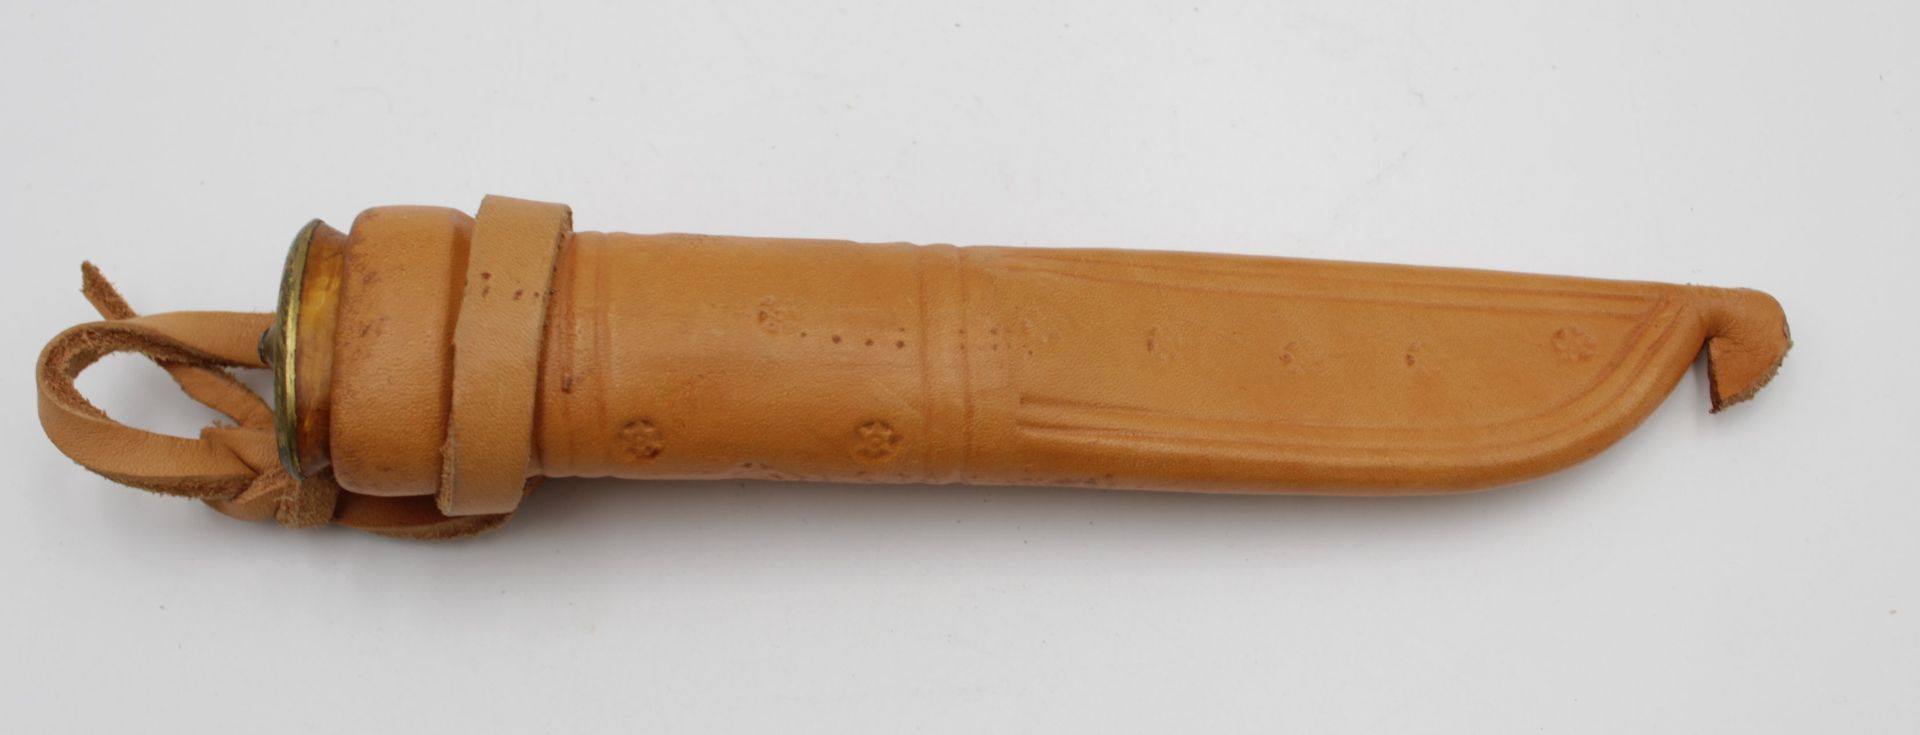 Finndolch mit Lederscheide, Holzgriff, L-21,8cm.